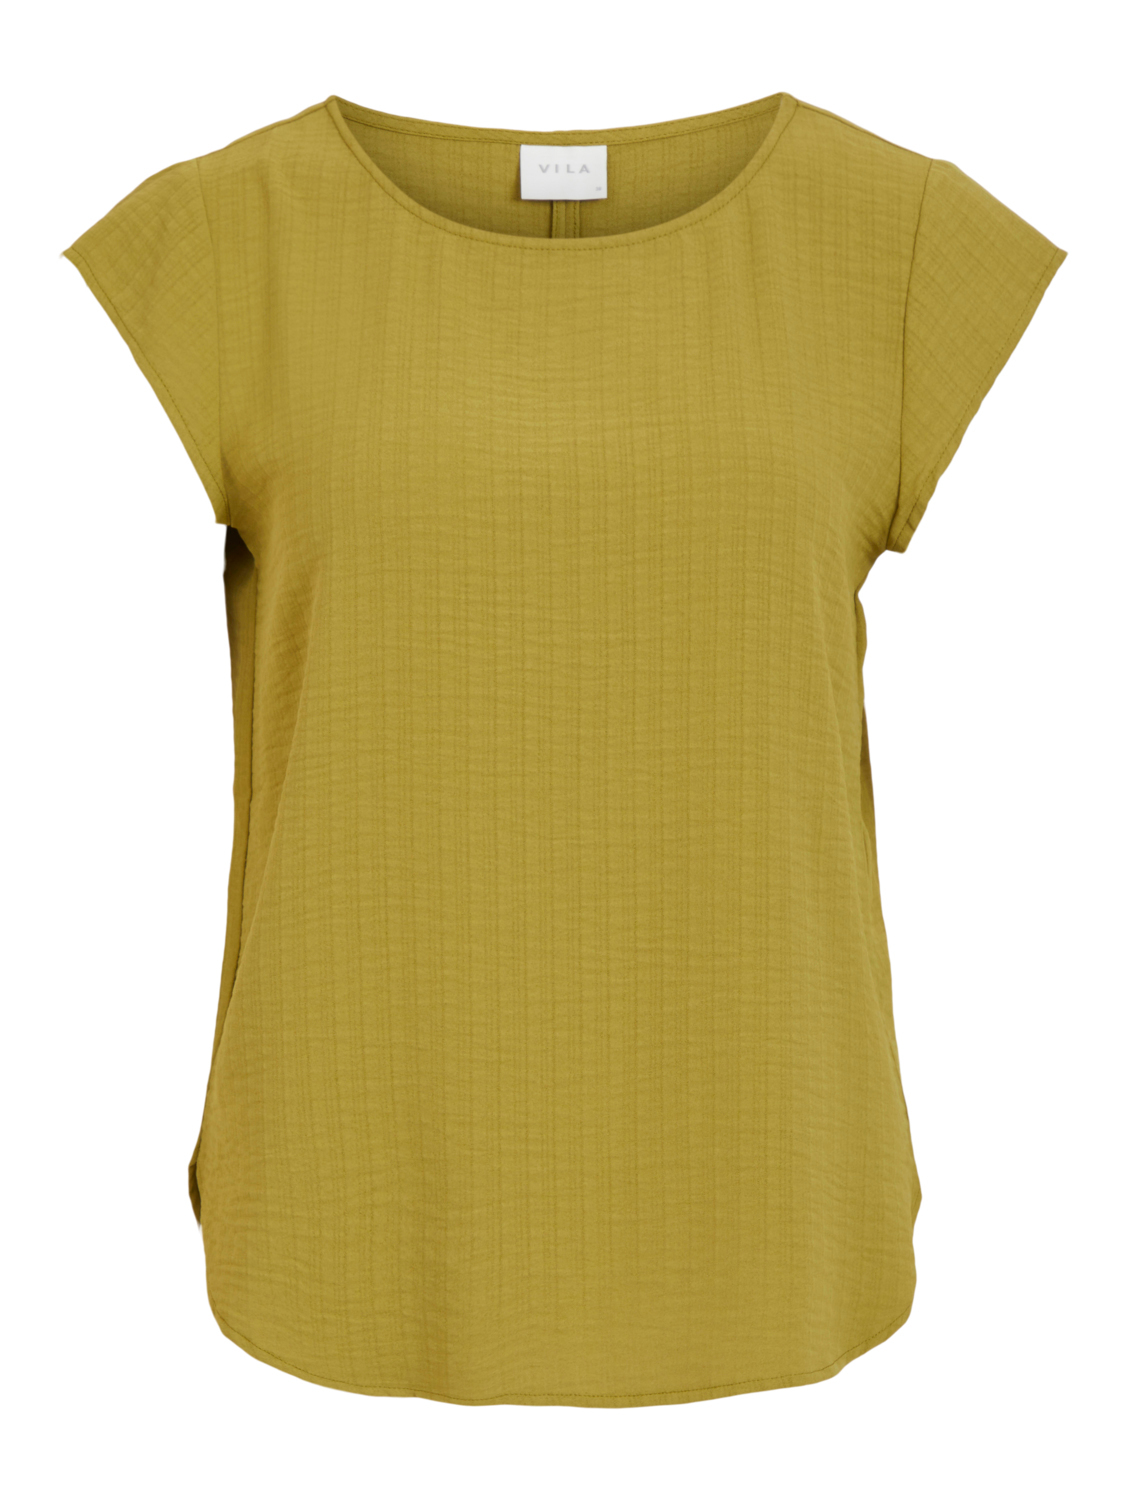 Odzież Kobiety VILA Koszulka Lovie w kolorze Oliwkowym 